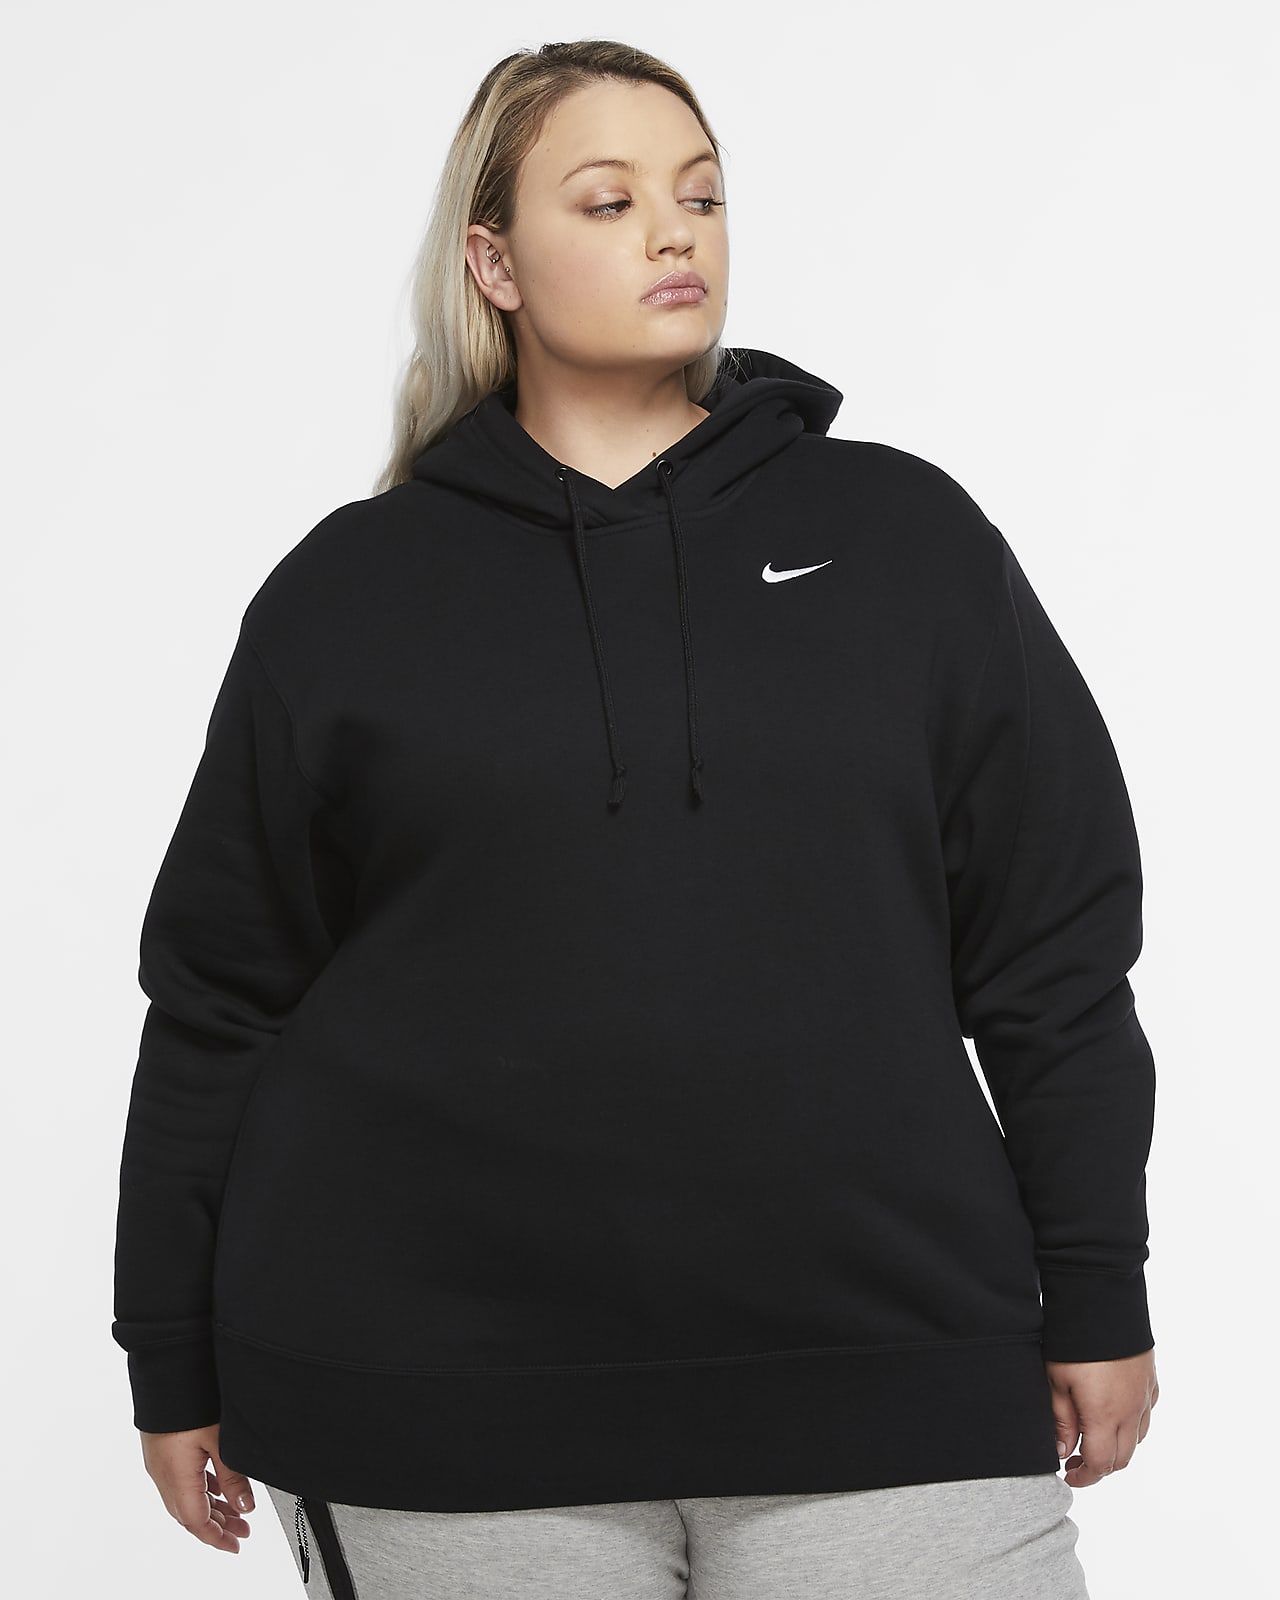 Nike Sportswear Women's Fleece Pullover 